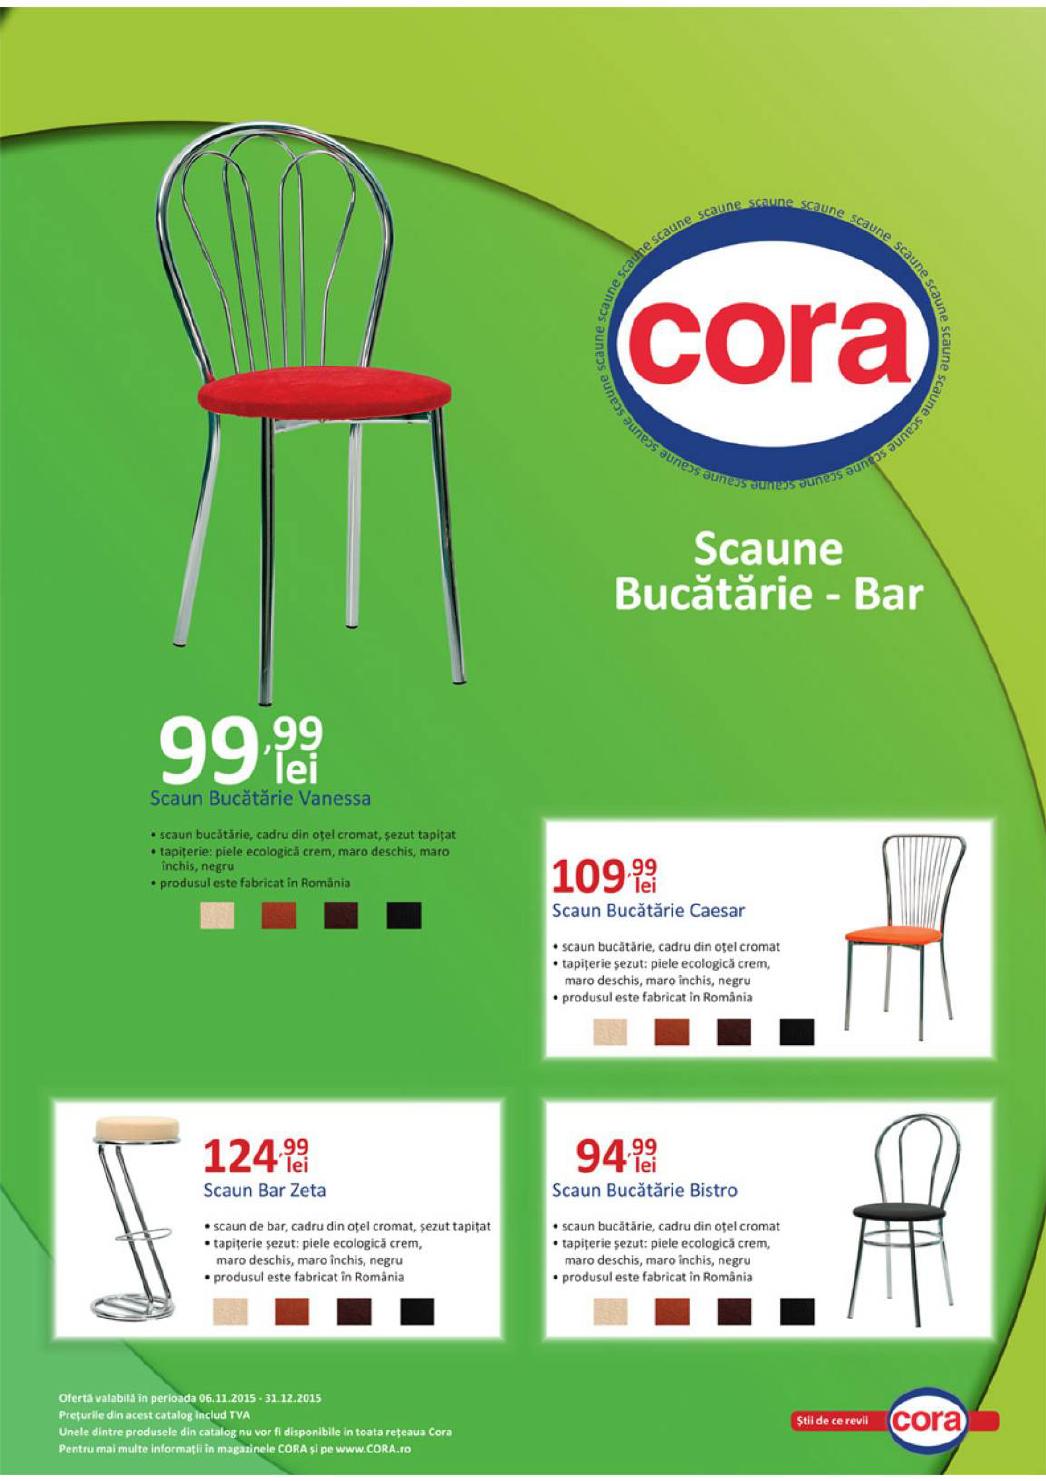 Cora catalog Scaune Bucatarie - Bar - 09 Noiembrie - 31 Decembrie 2015